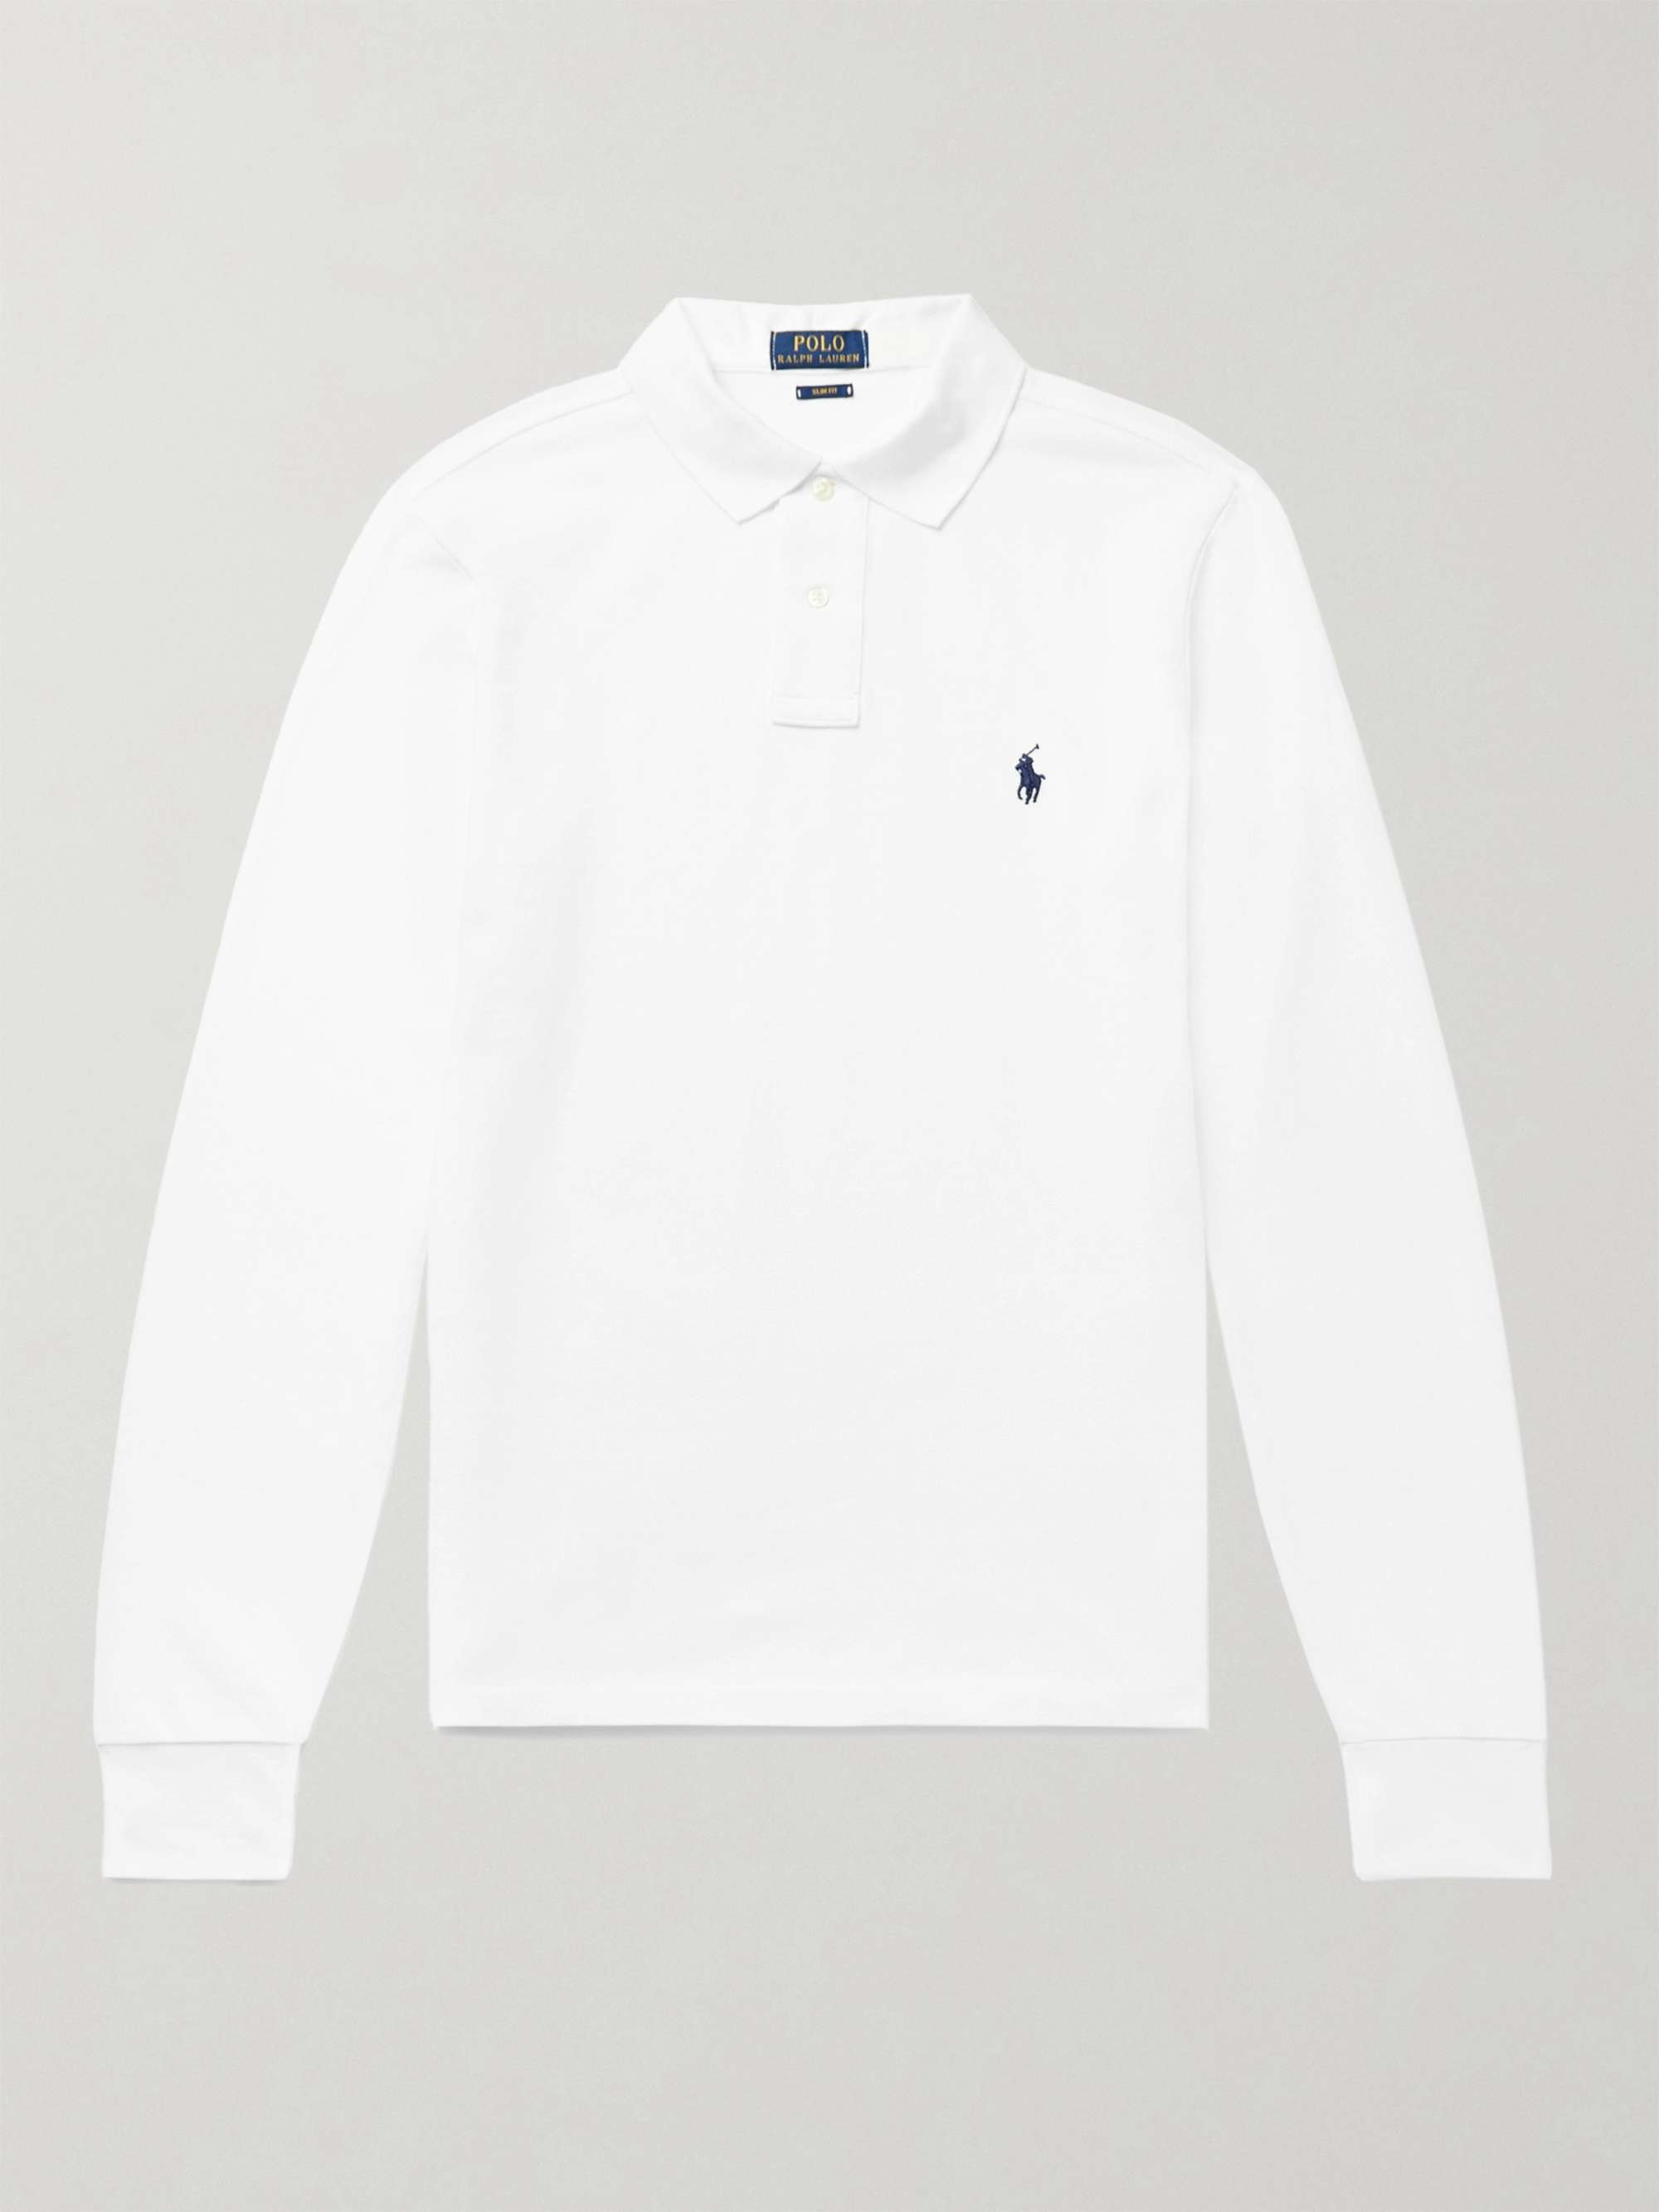 POLO RALPH LAUREN Slim-Fit Cotton-Piqué Polo Shirt for Men | MR PORTER